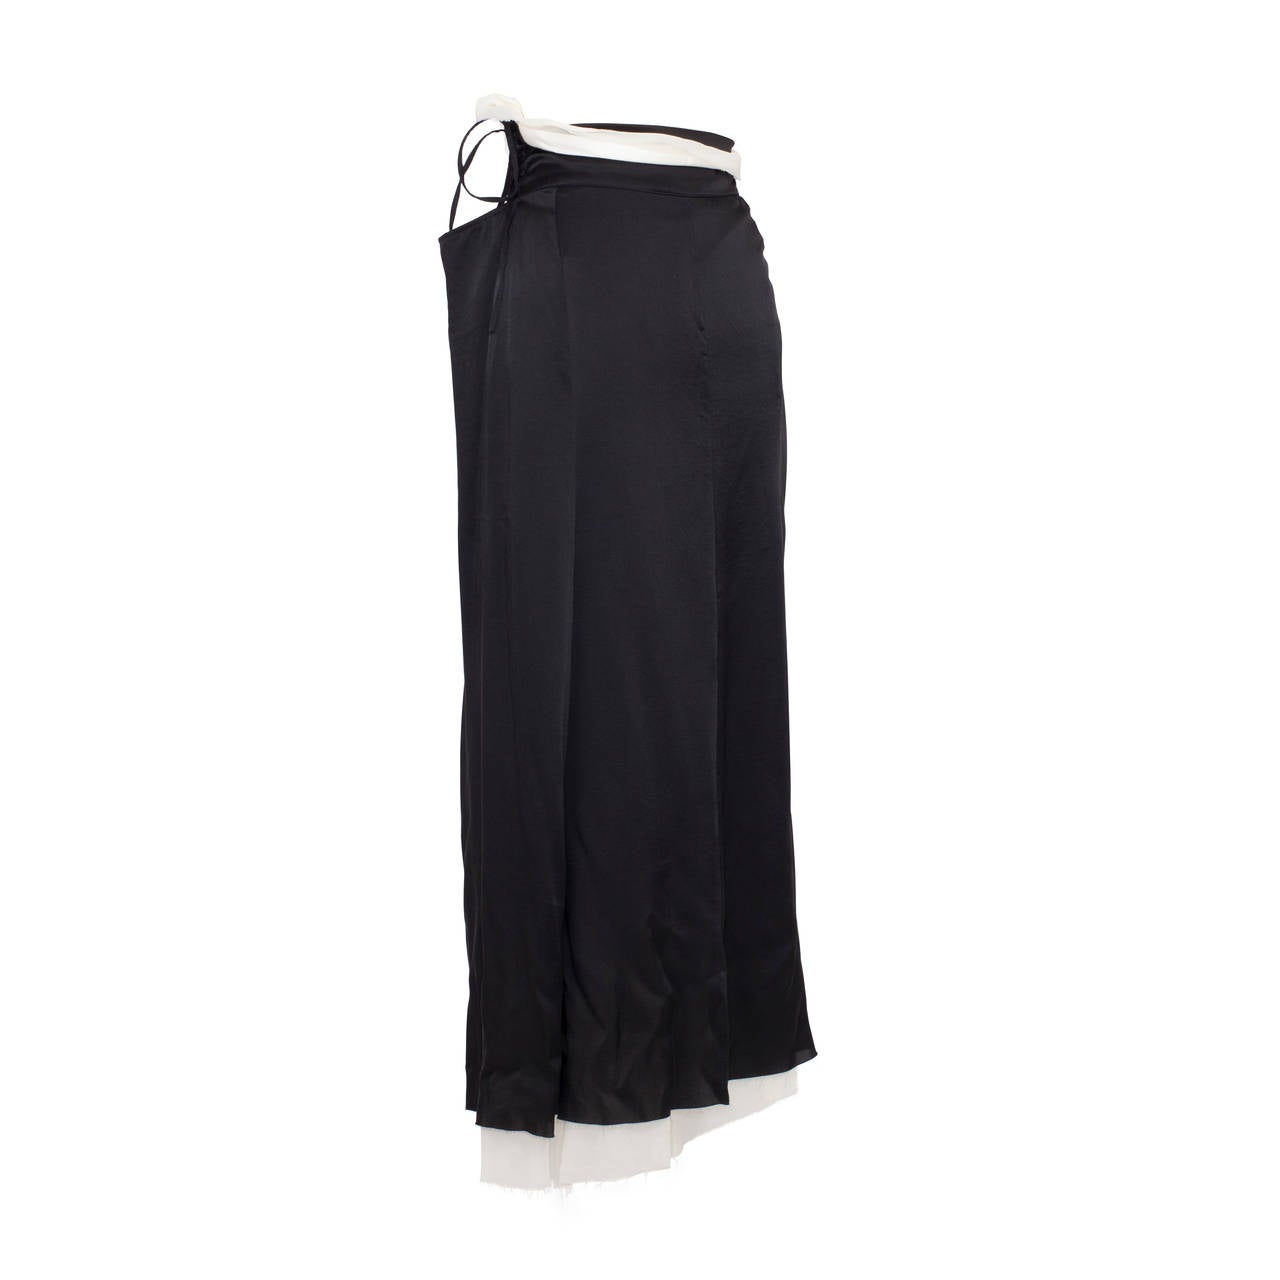 Women's Yohji Yamamoto Lace up Black White Double layered Skirt 1990's